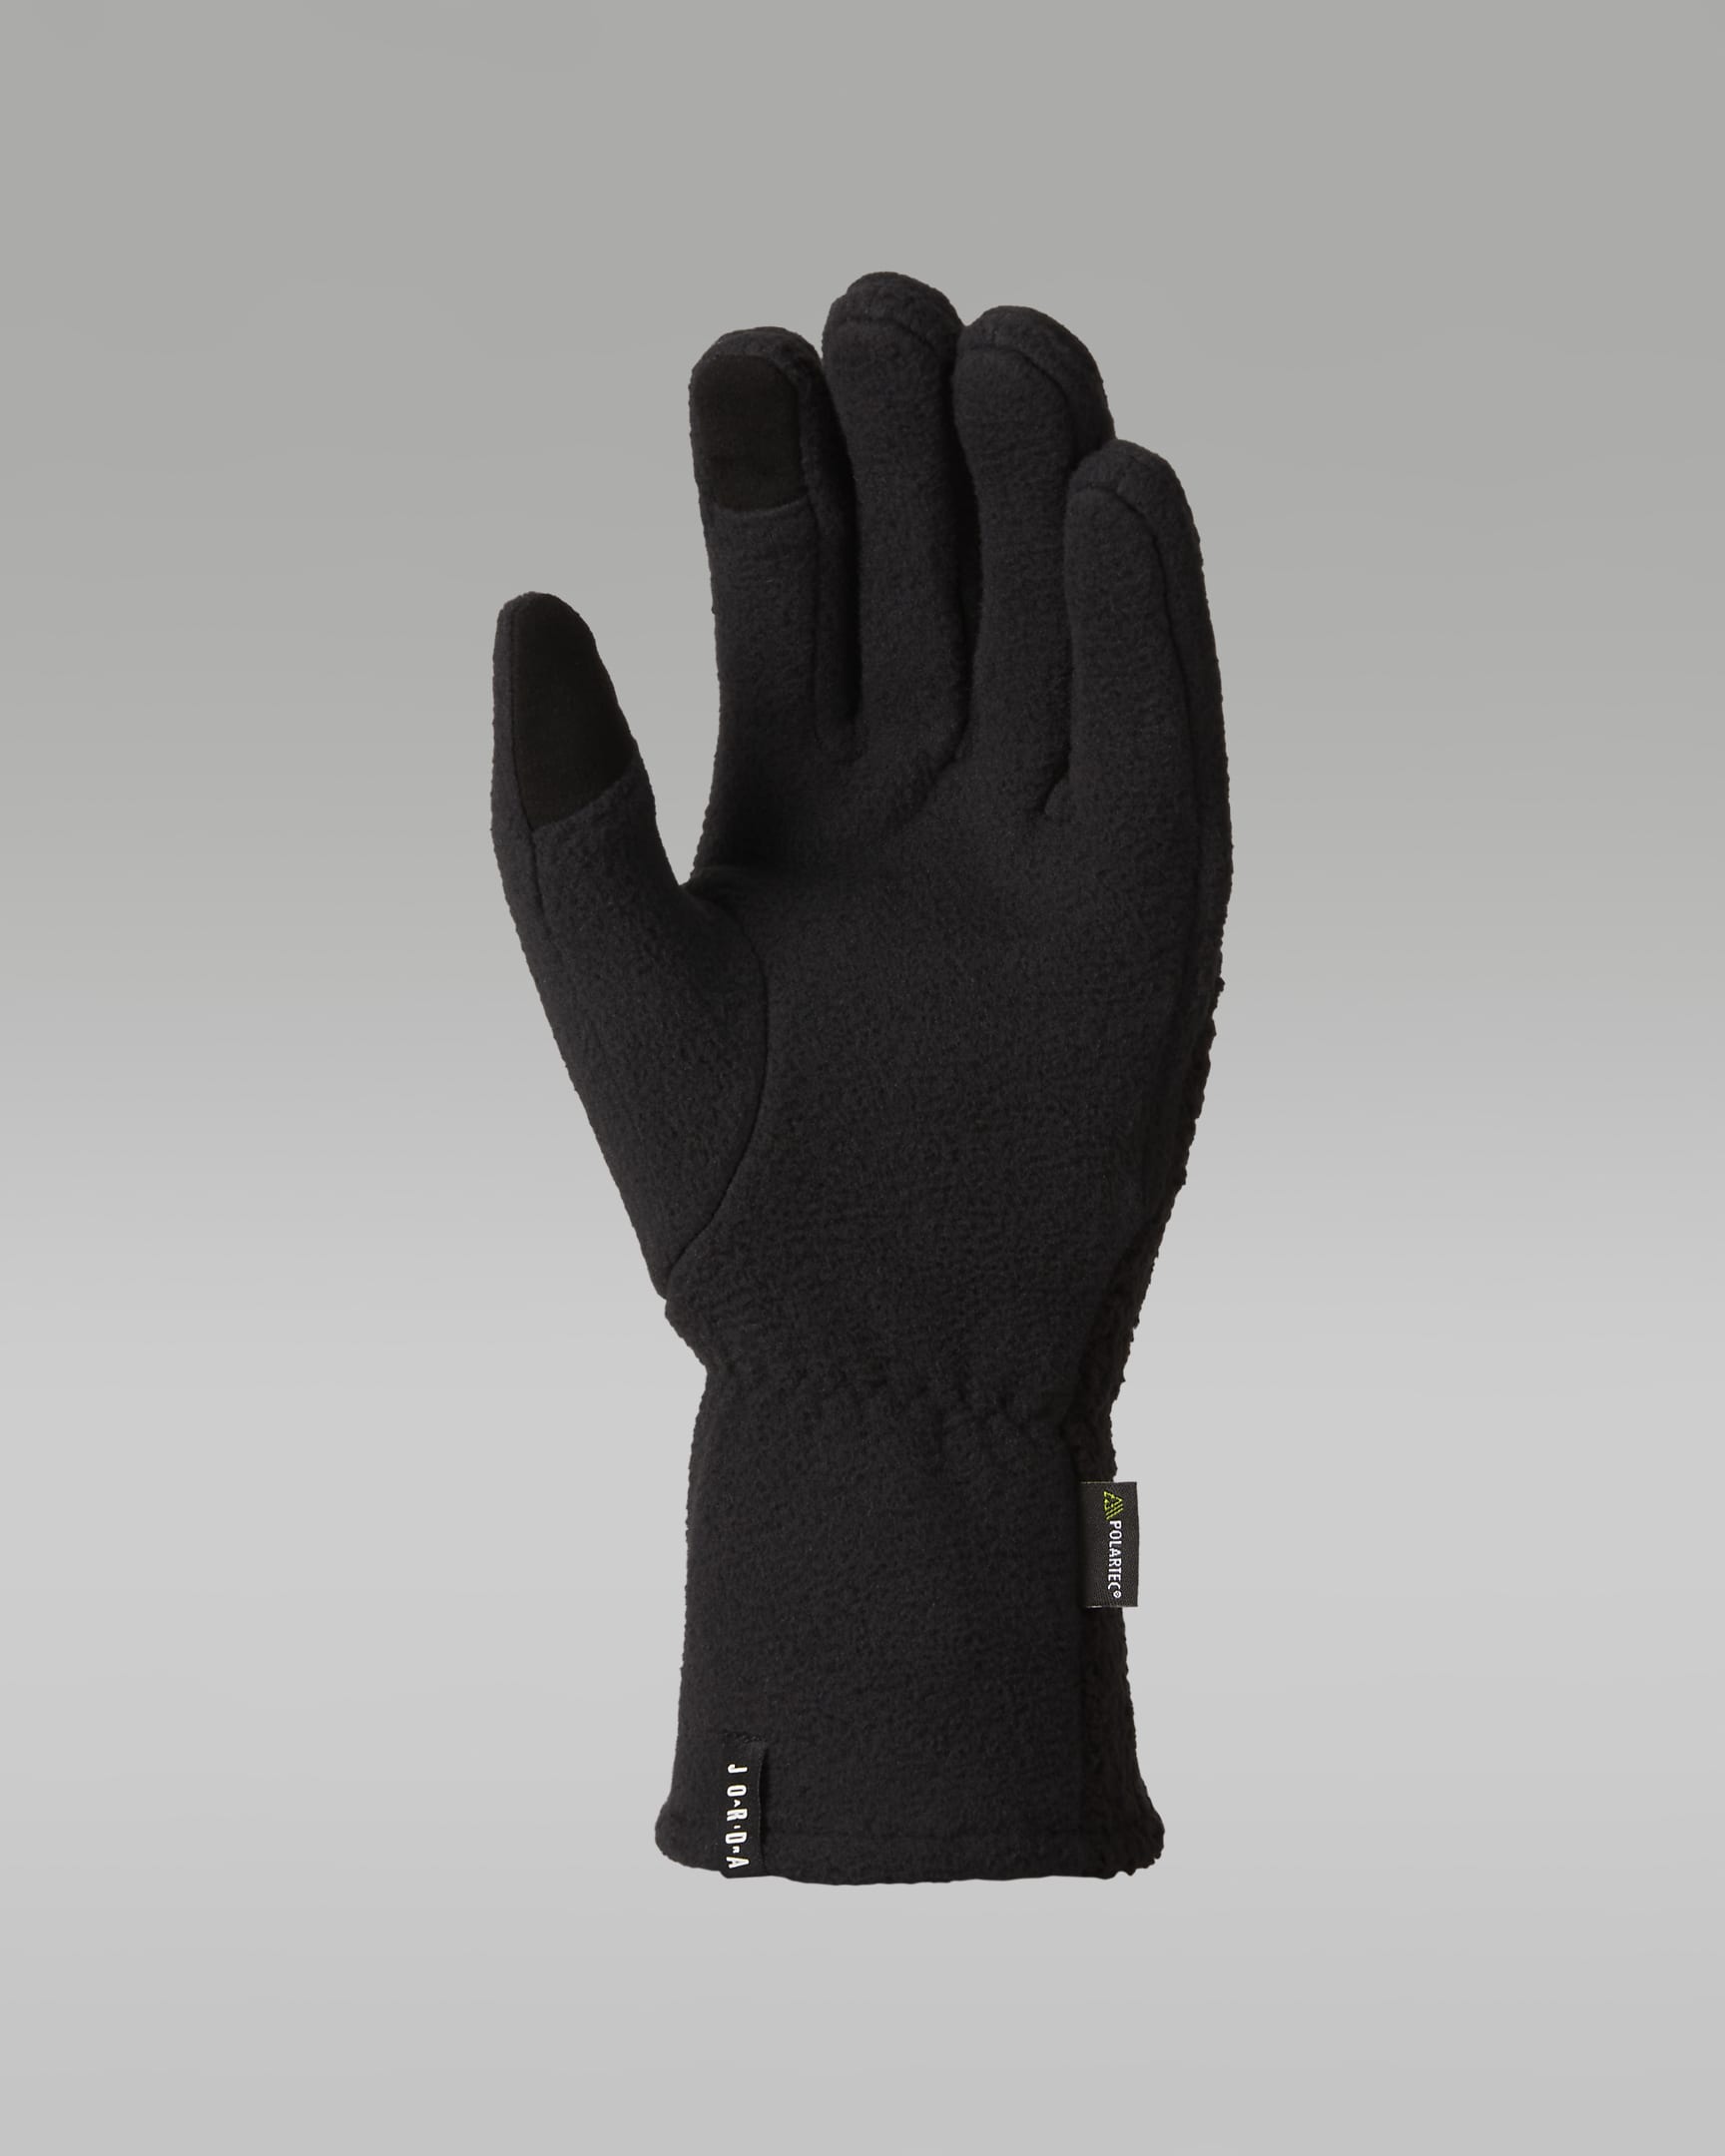 Jordan Men's Fleece Gloves - Black/White